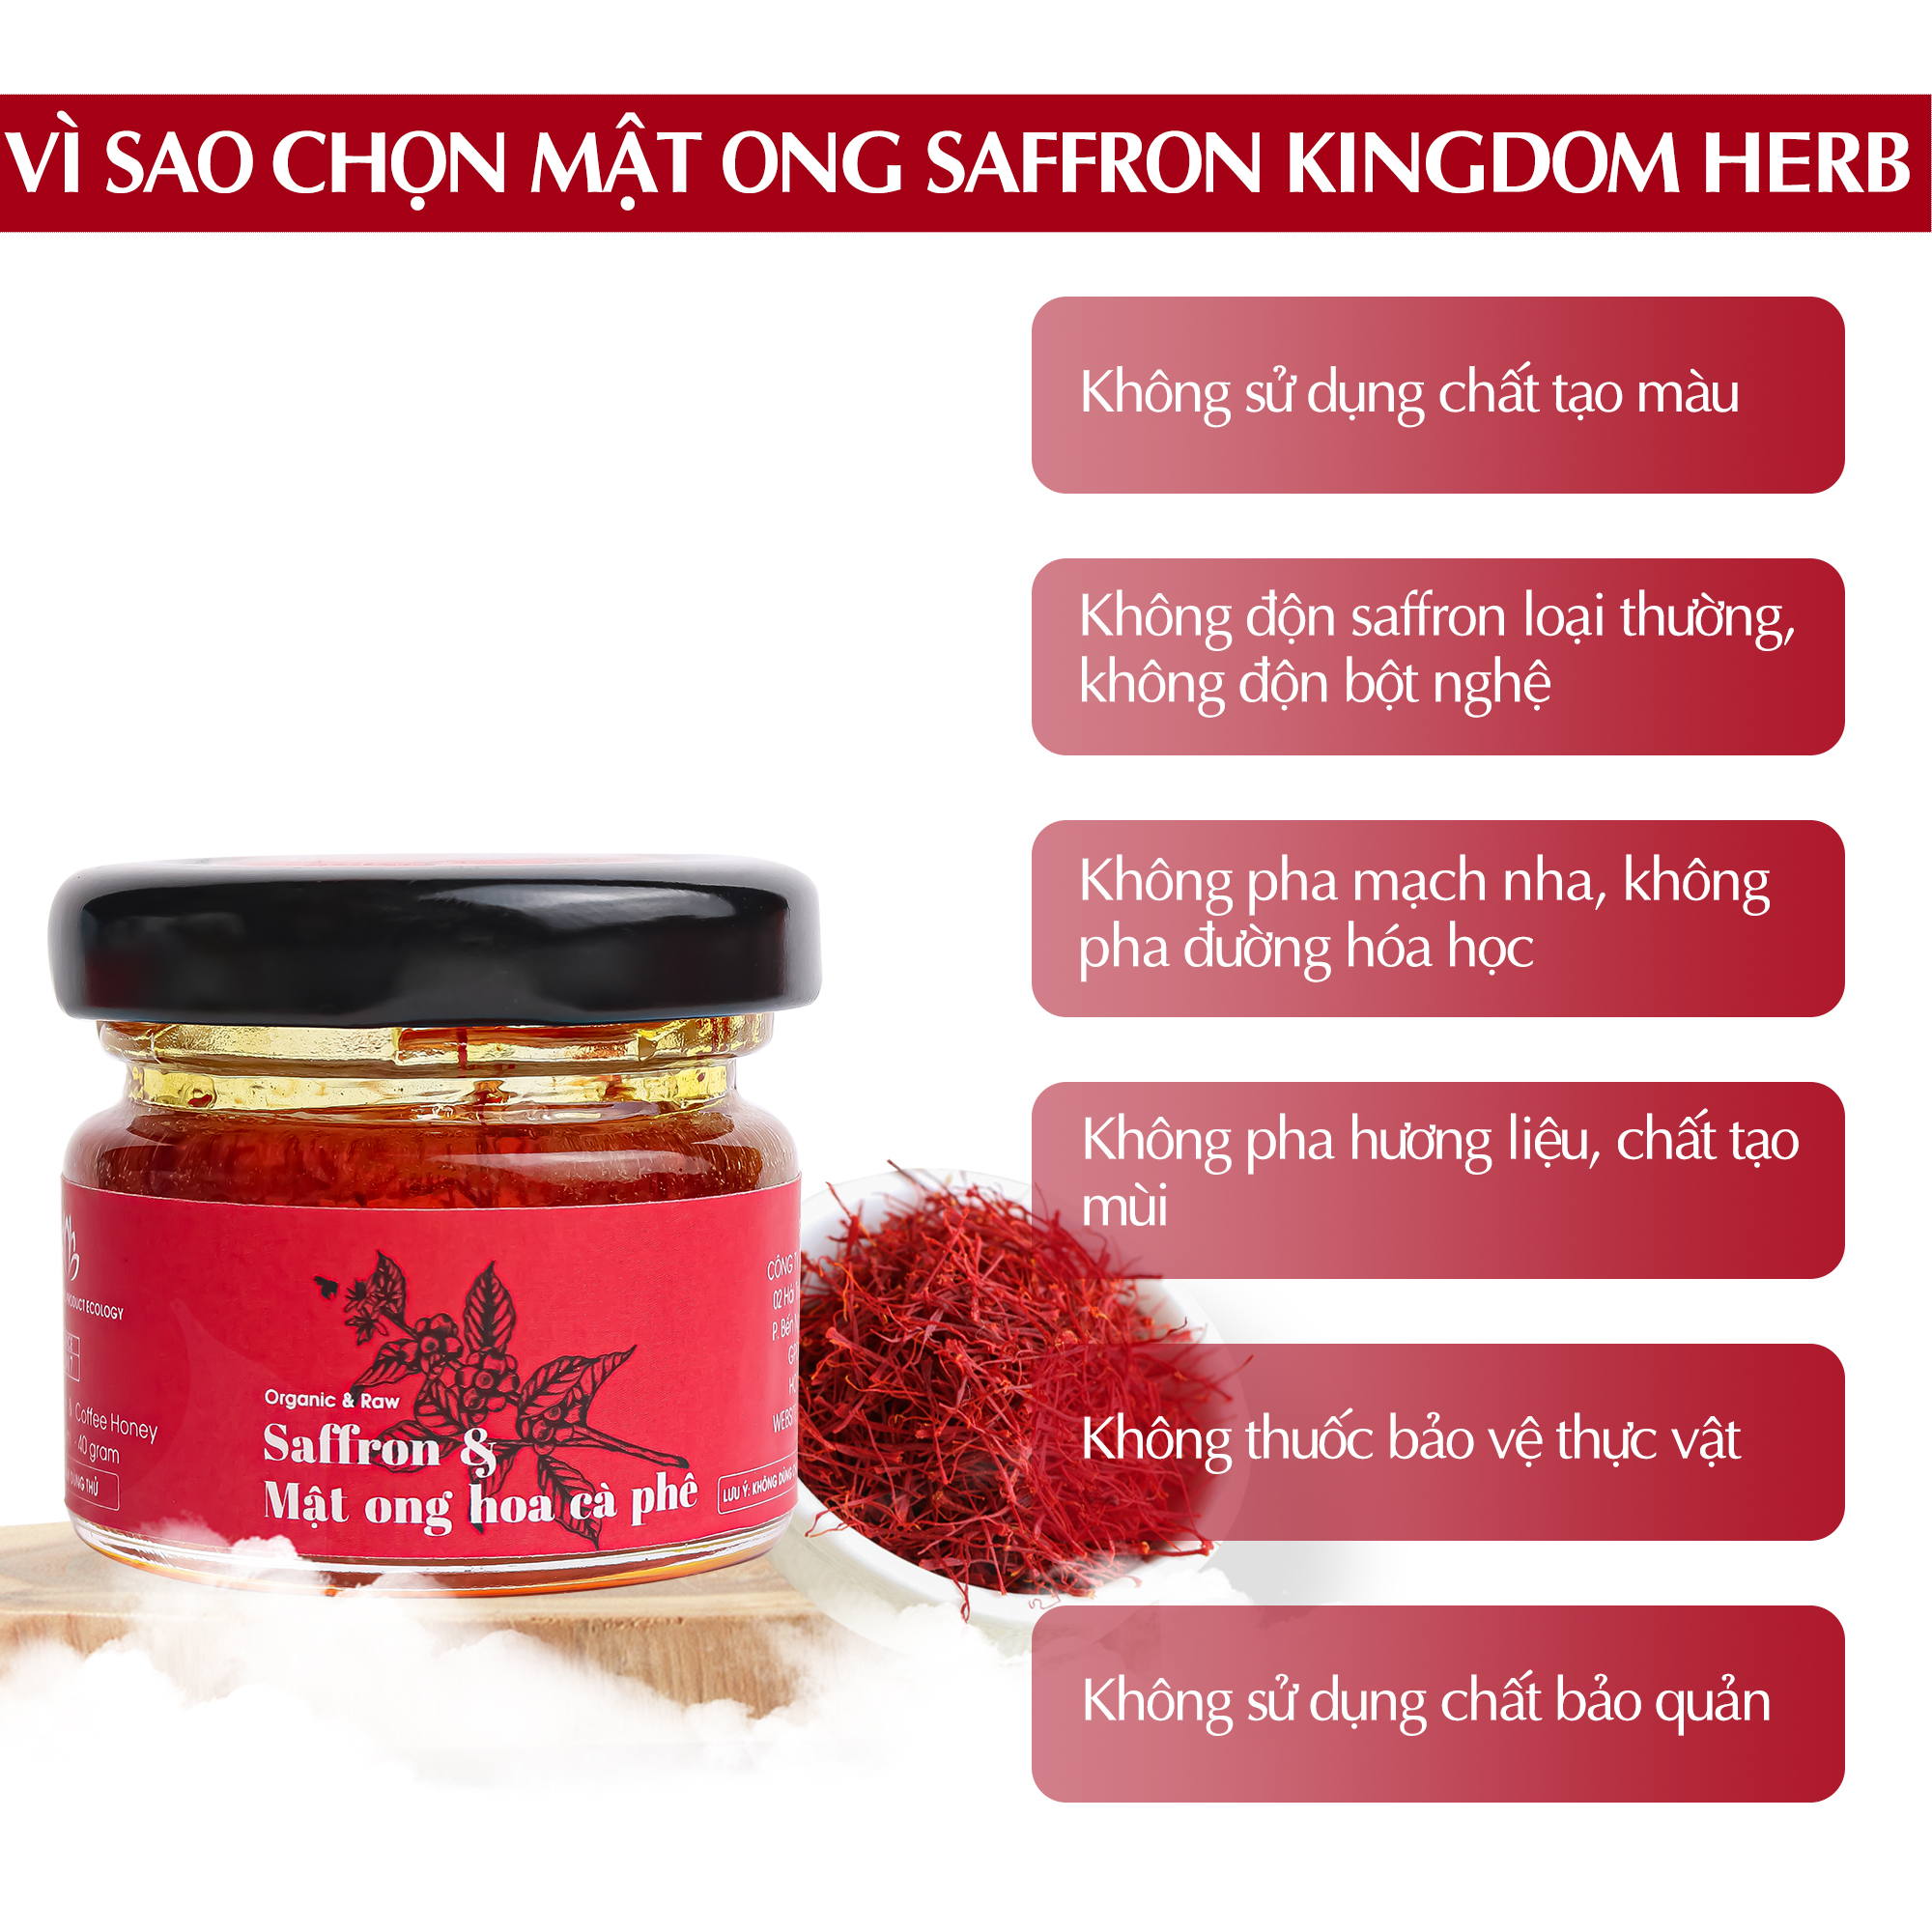 Saffron mật ong Kingdom Herb thượng hạng chính hãng 100% hộp 40g (tặng que lấy mật)